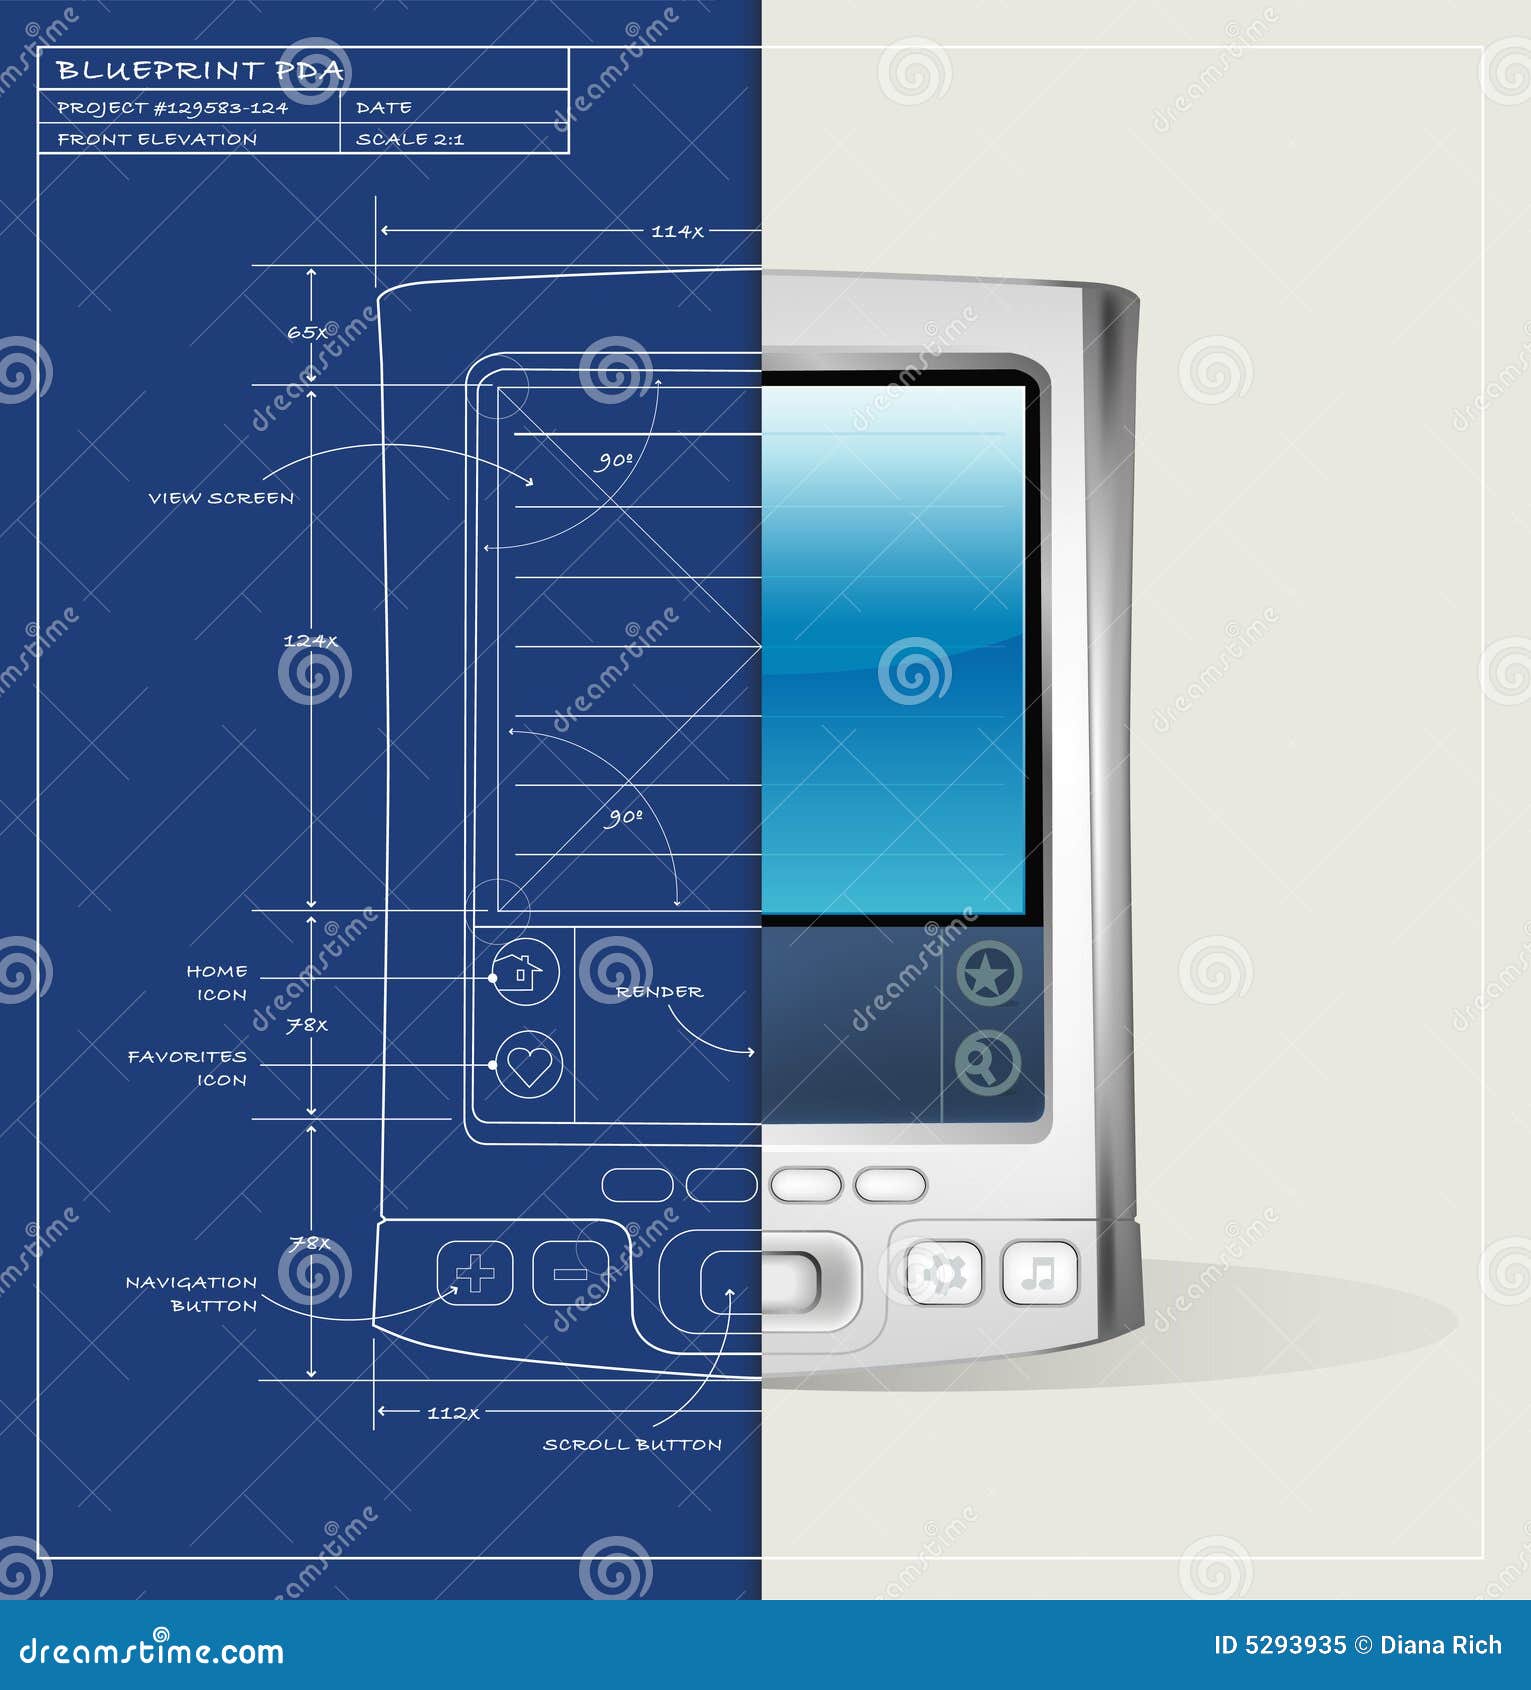 Dispositif du modèle PDA. Illustration d'écran divisé du modèle PDA ; le rendu réaliste de PDA est sur la couche séparée et se termine.